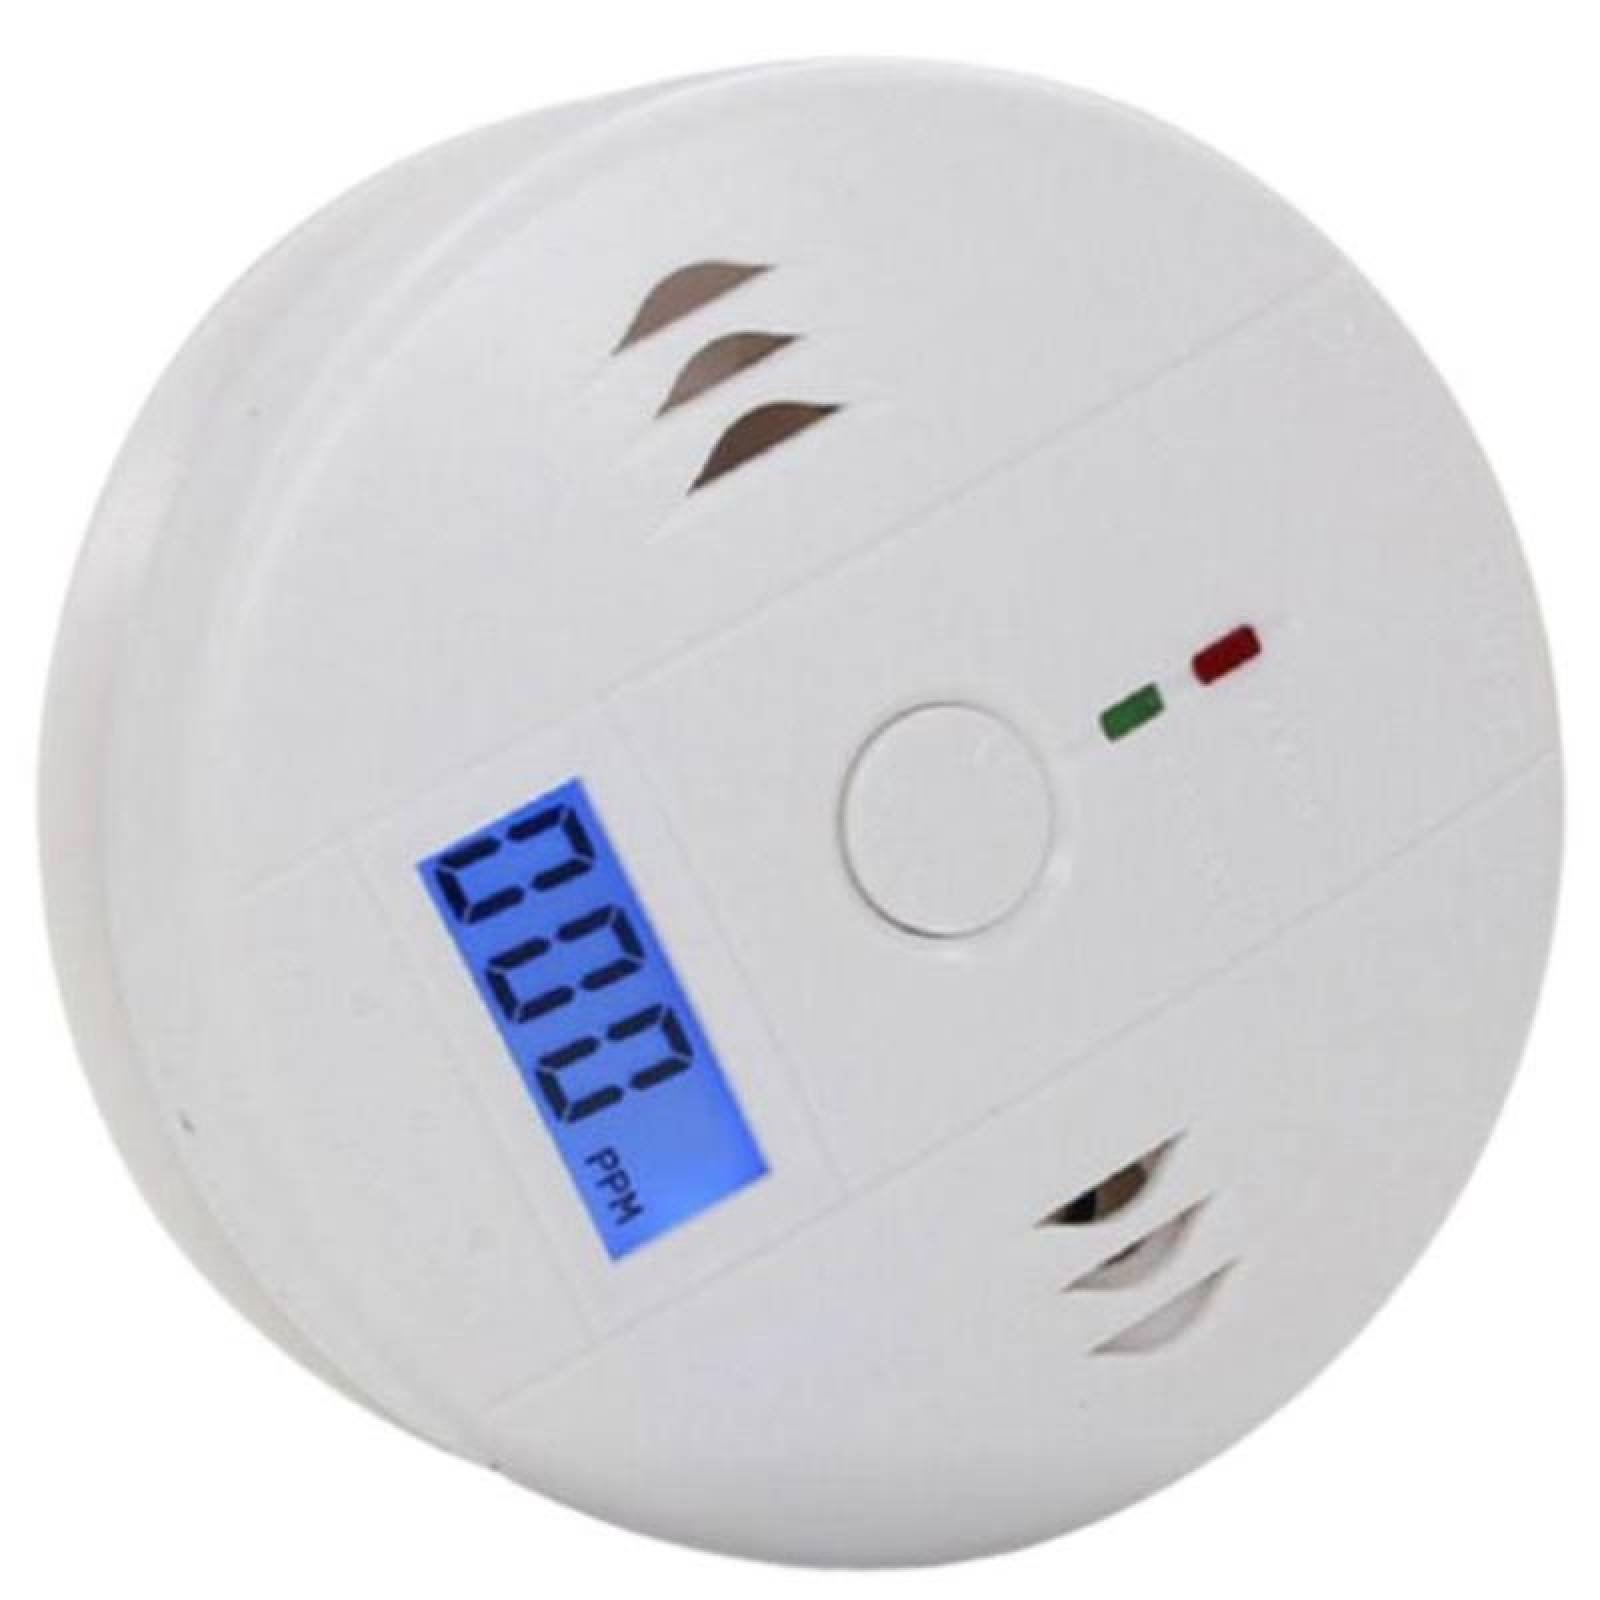 Detector para Humo Inalámbrico MXSKE-001-4 Alarma Visual Roja Sensor Monoxido de Carbono Baterias 3xAA Incluidas 85 a 105dB 5 - 40C Pantalla LCD Blanco 1 Pza, SmokeDigital